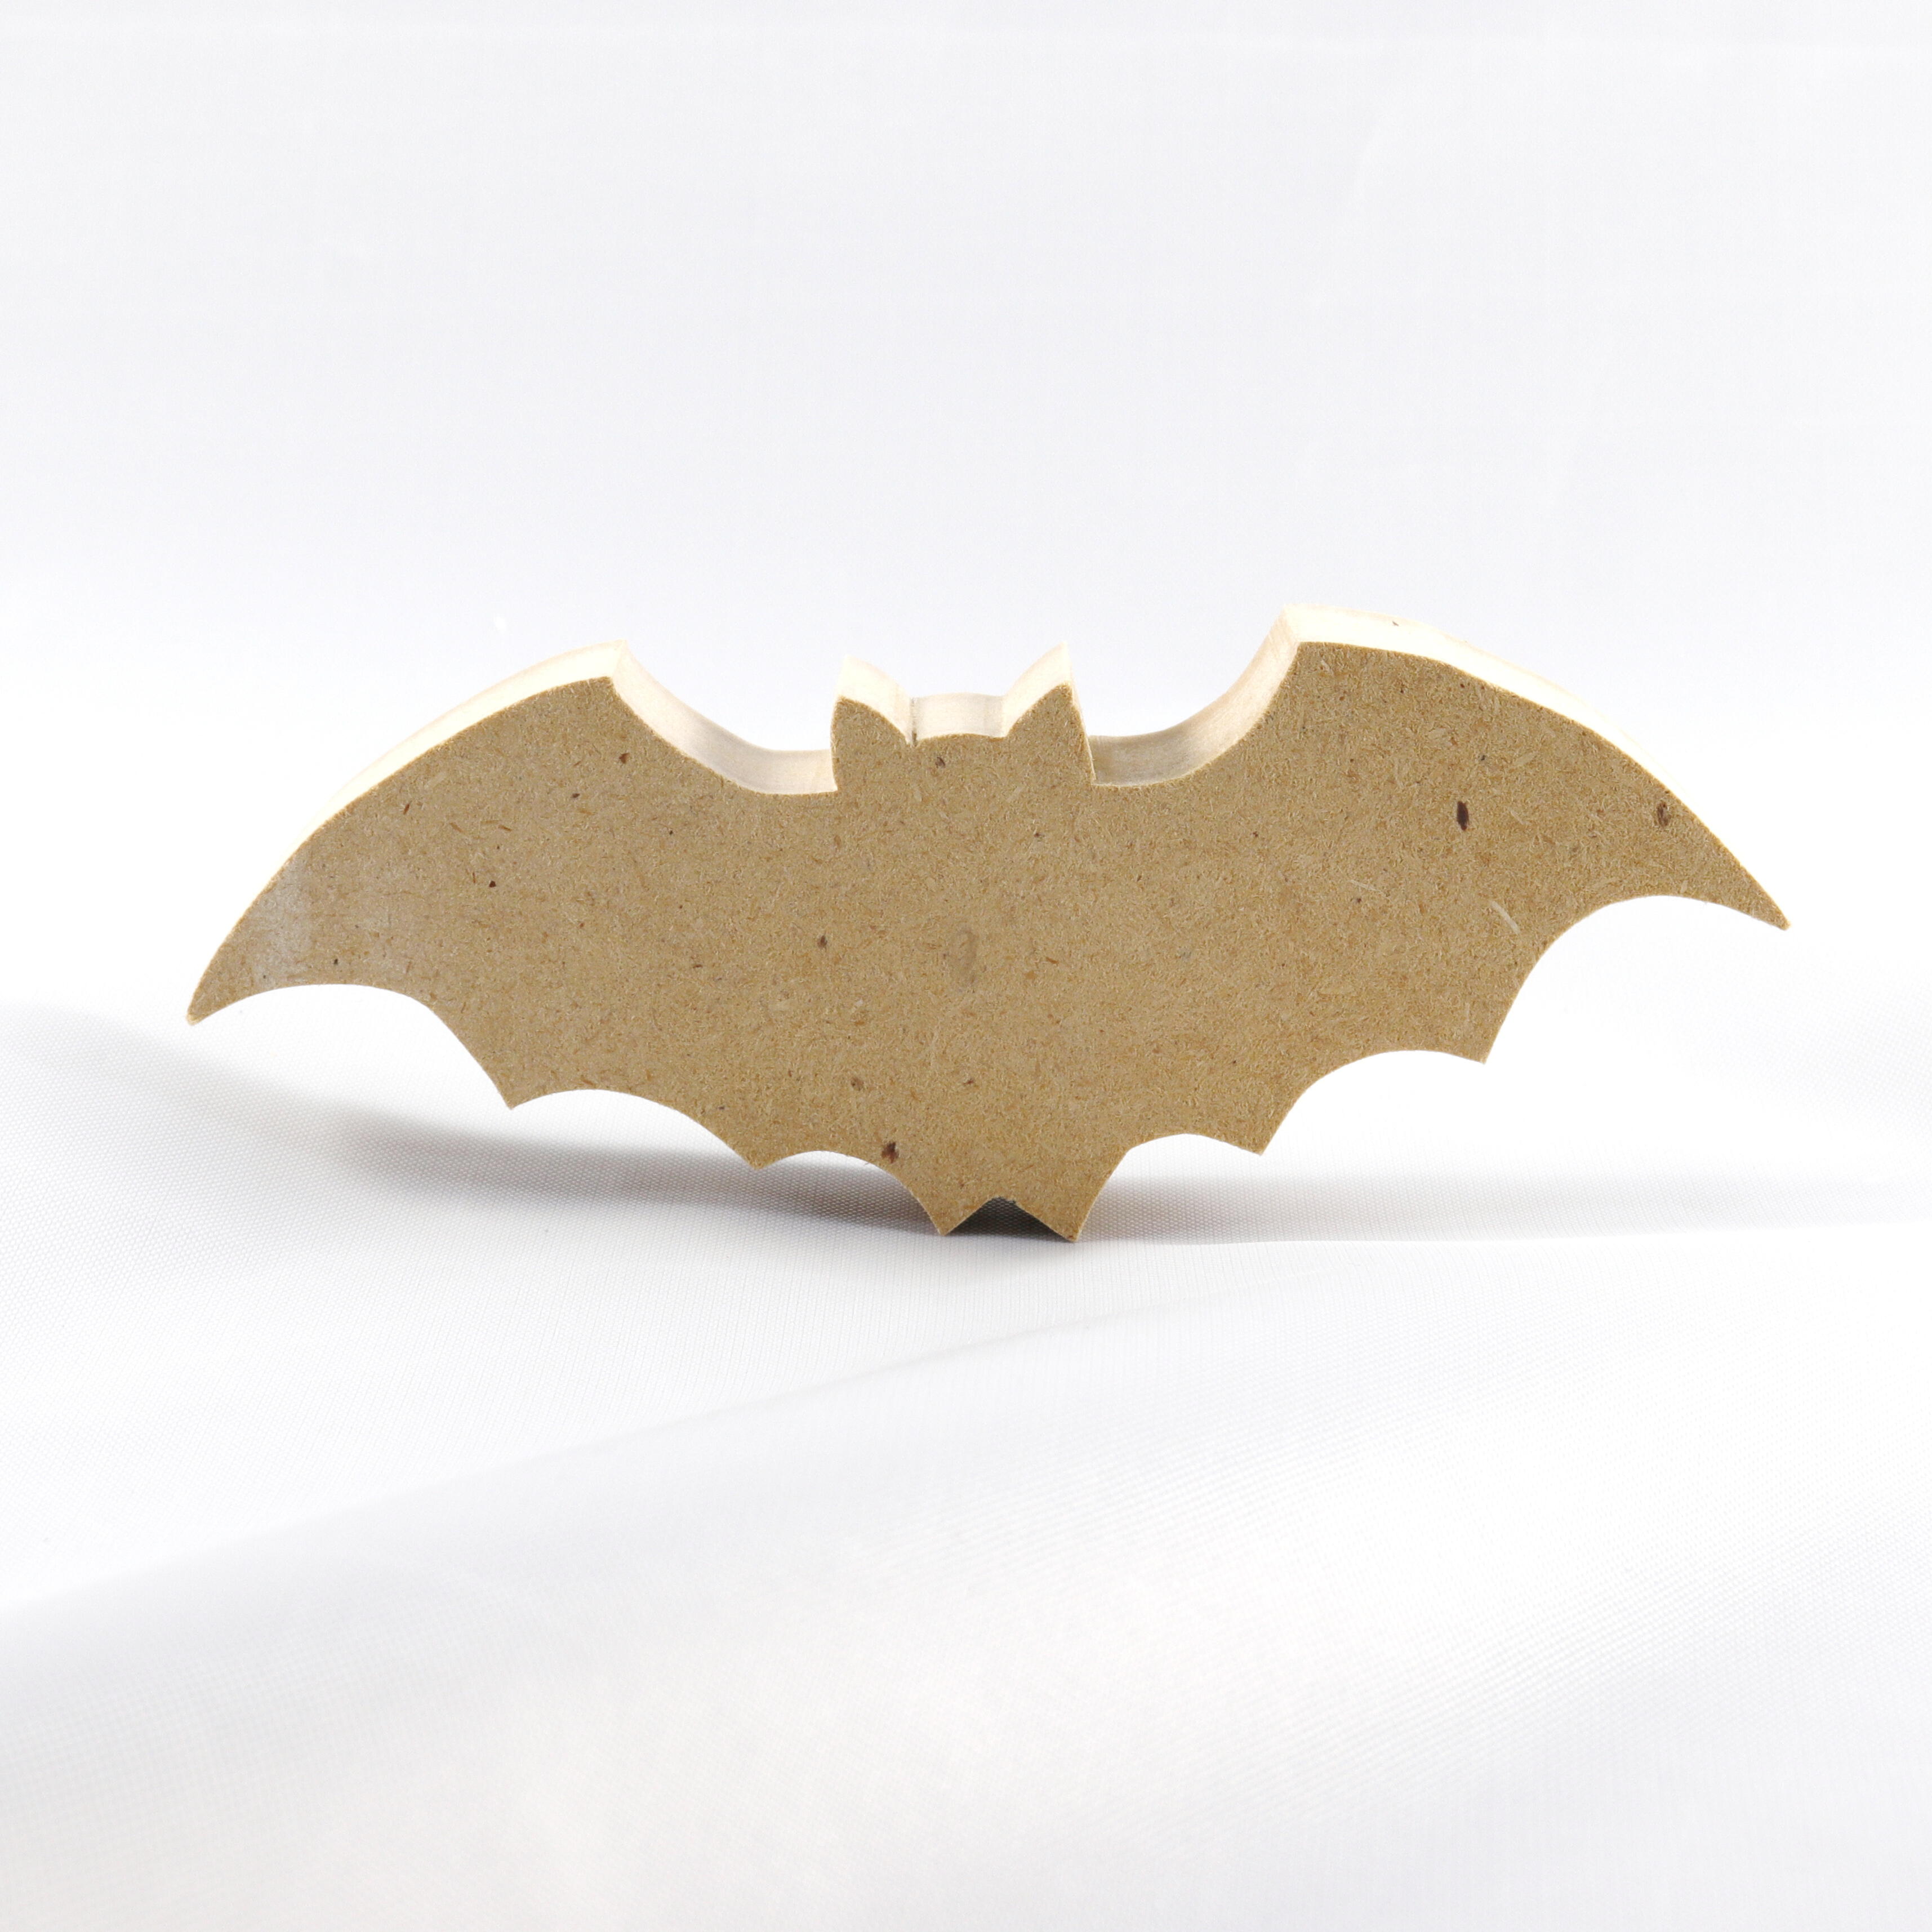 Wood Bats Halloween wooden craft shapes.